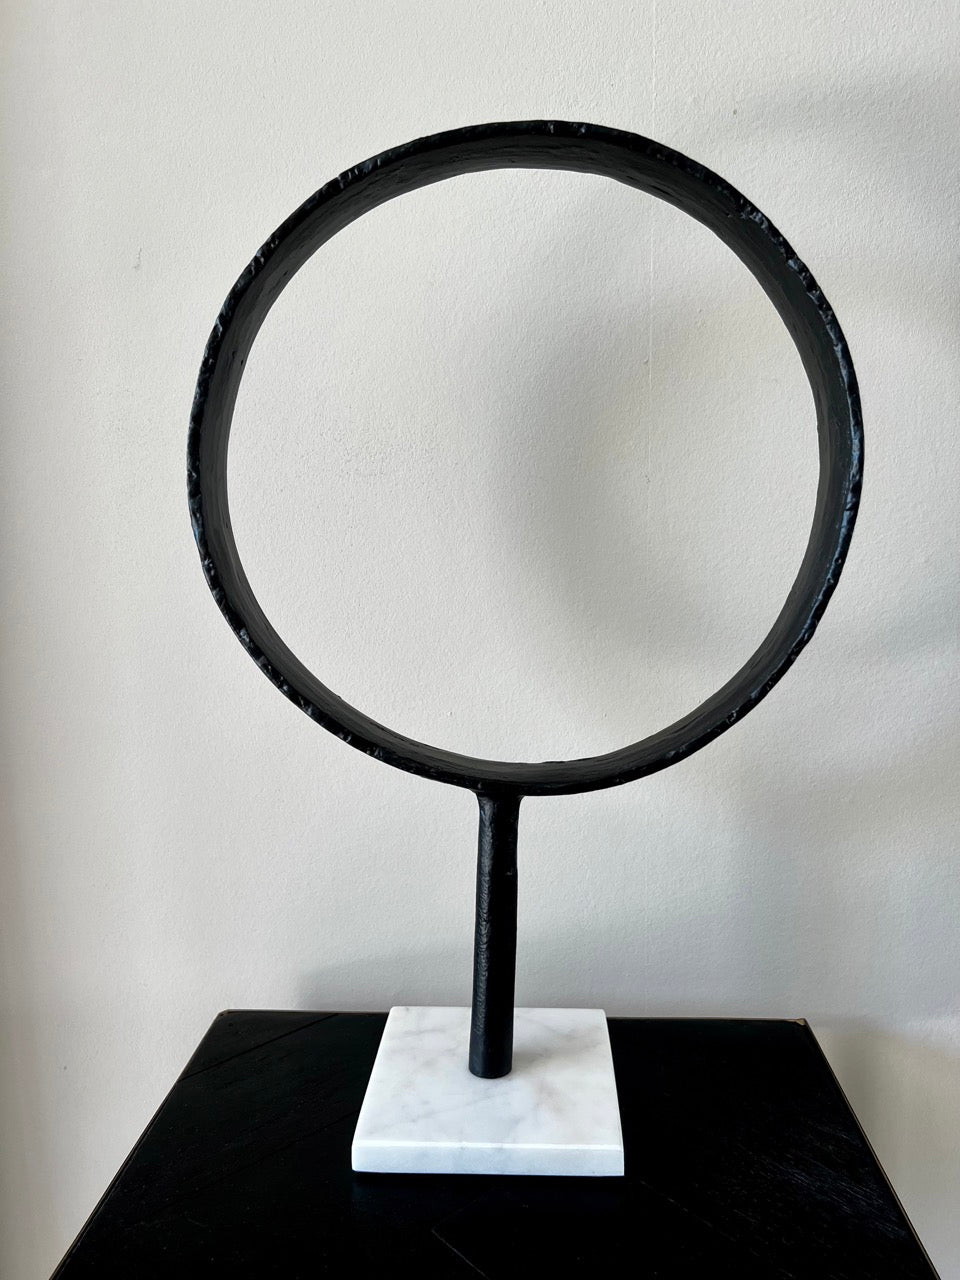 Zwarte metalen ring op marmeren voet - zwart/wit - 43 cm hoog